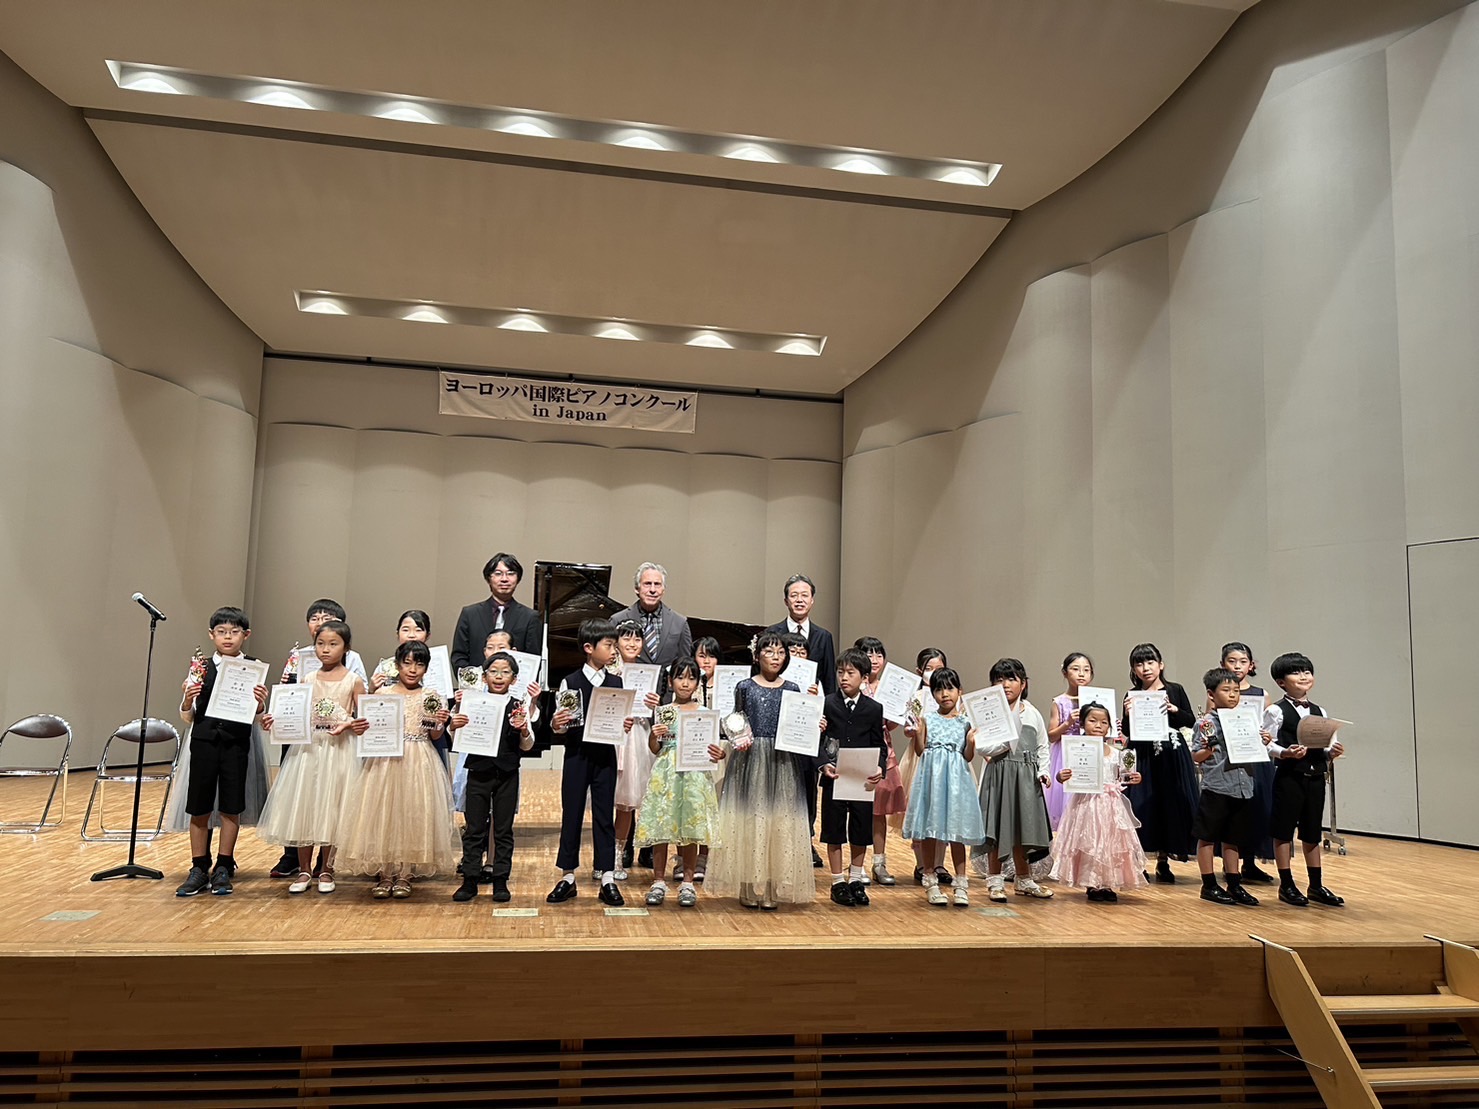 第14回ヨーロッパ国際ピアノコンクールin Japan 熊本地区大会